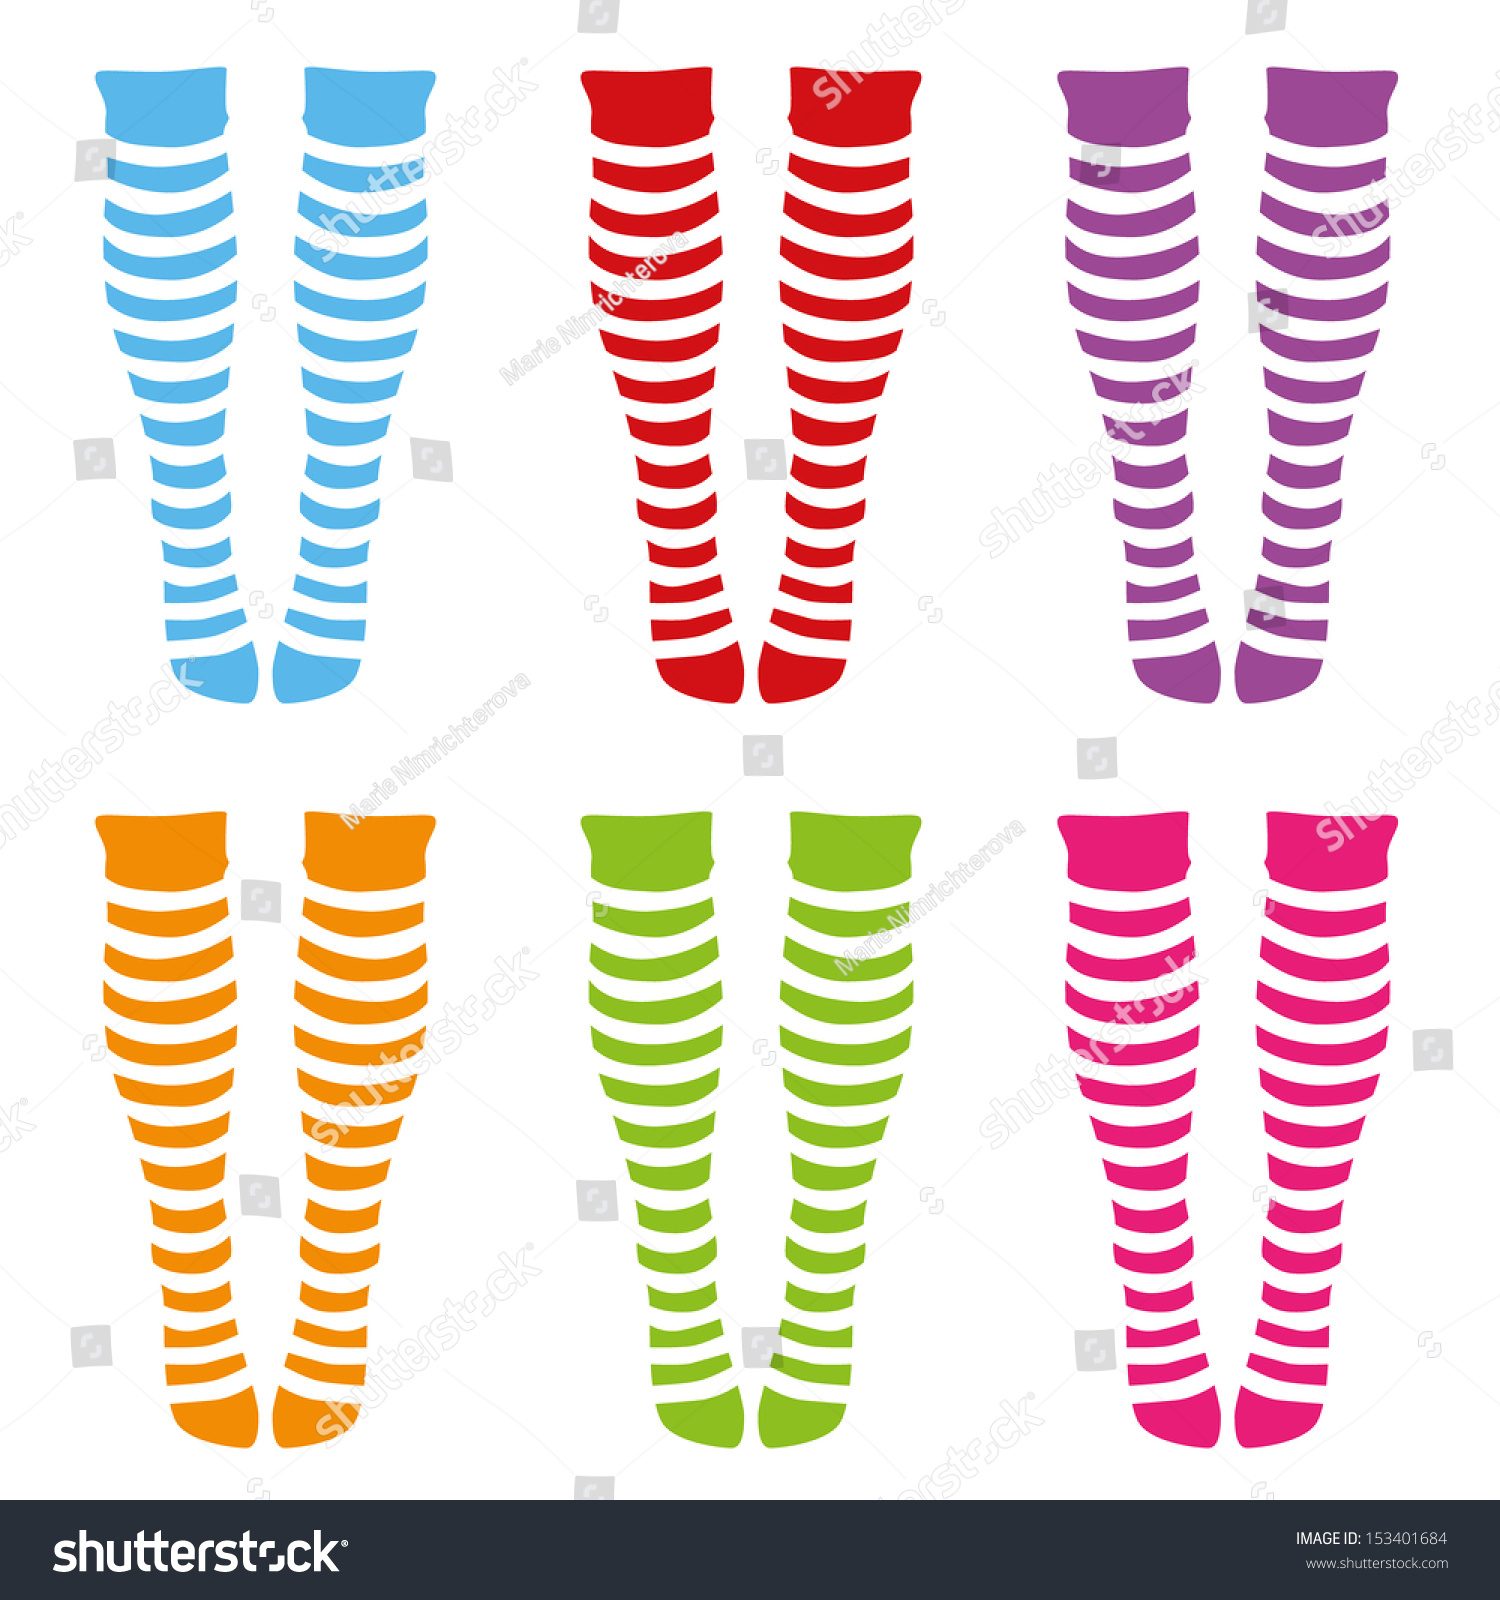 Knee-Length Socks Stock Vector Illustration 153401684 : Shutterstock